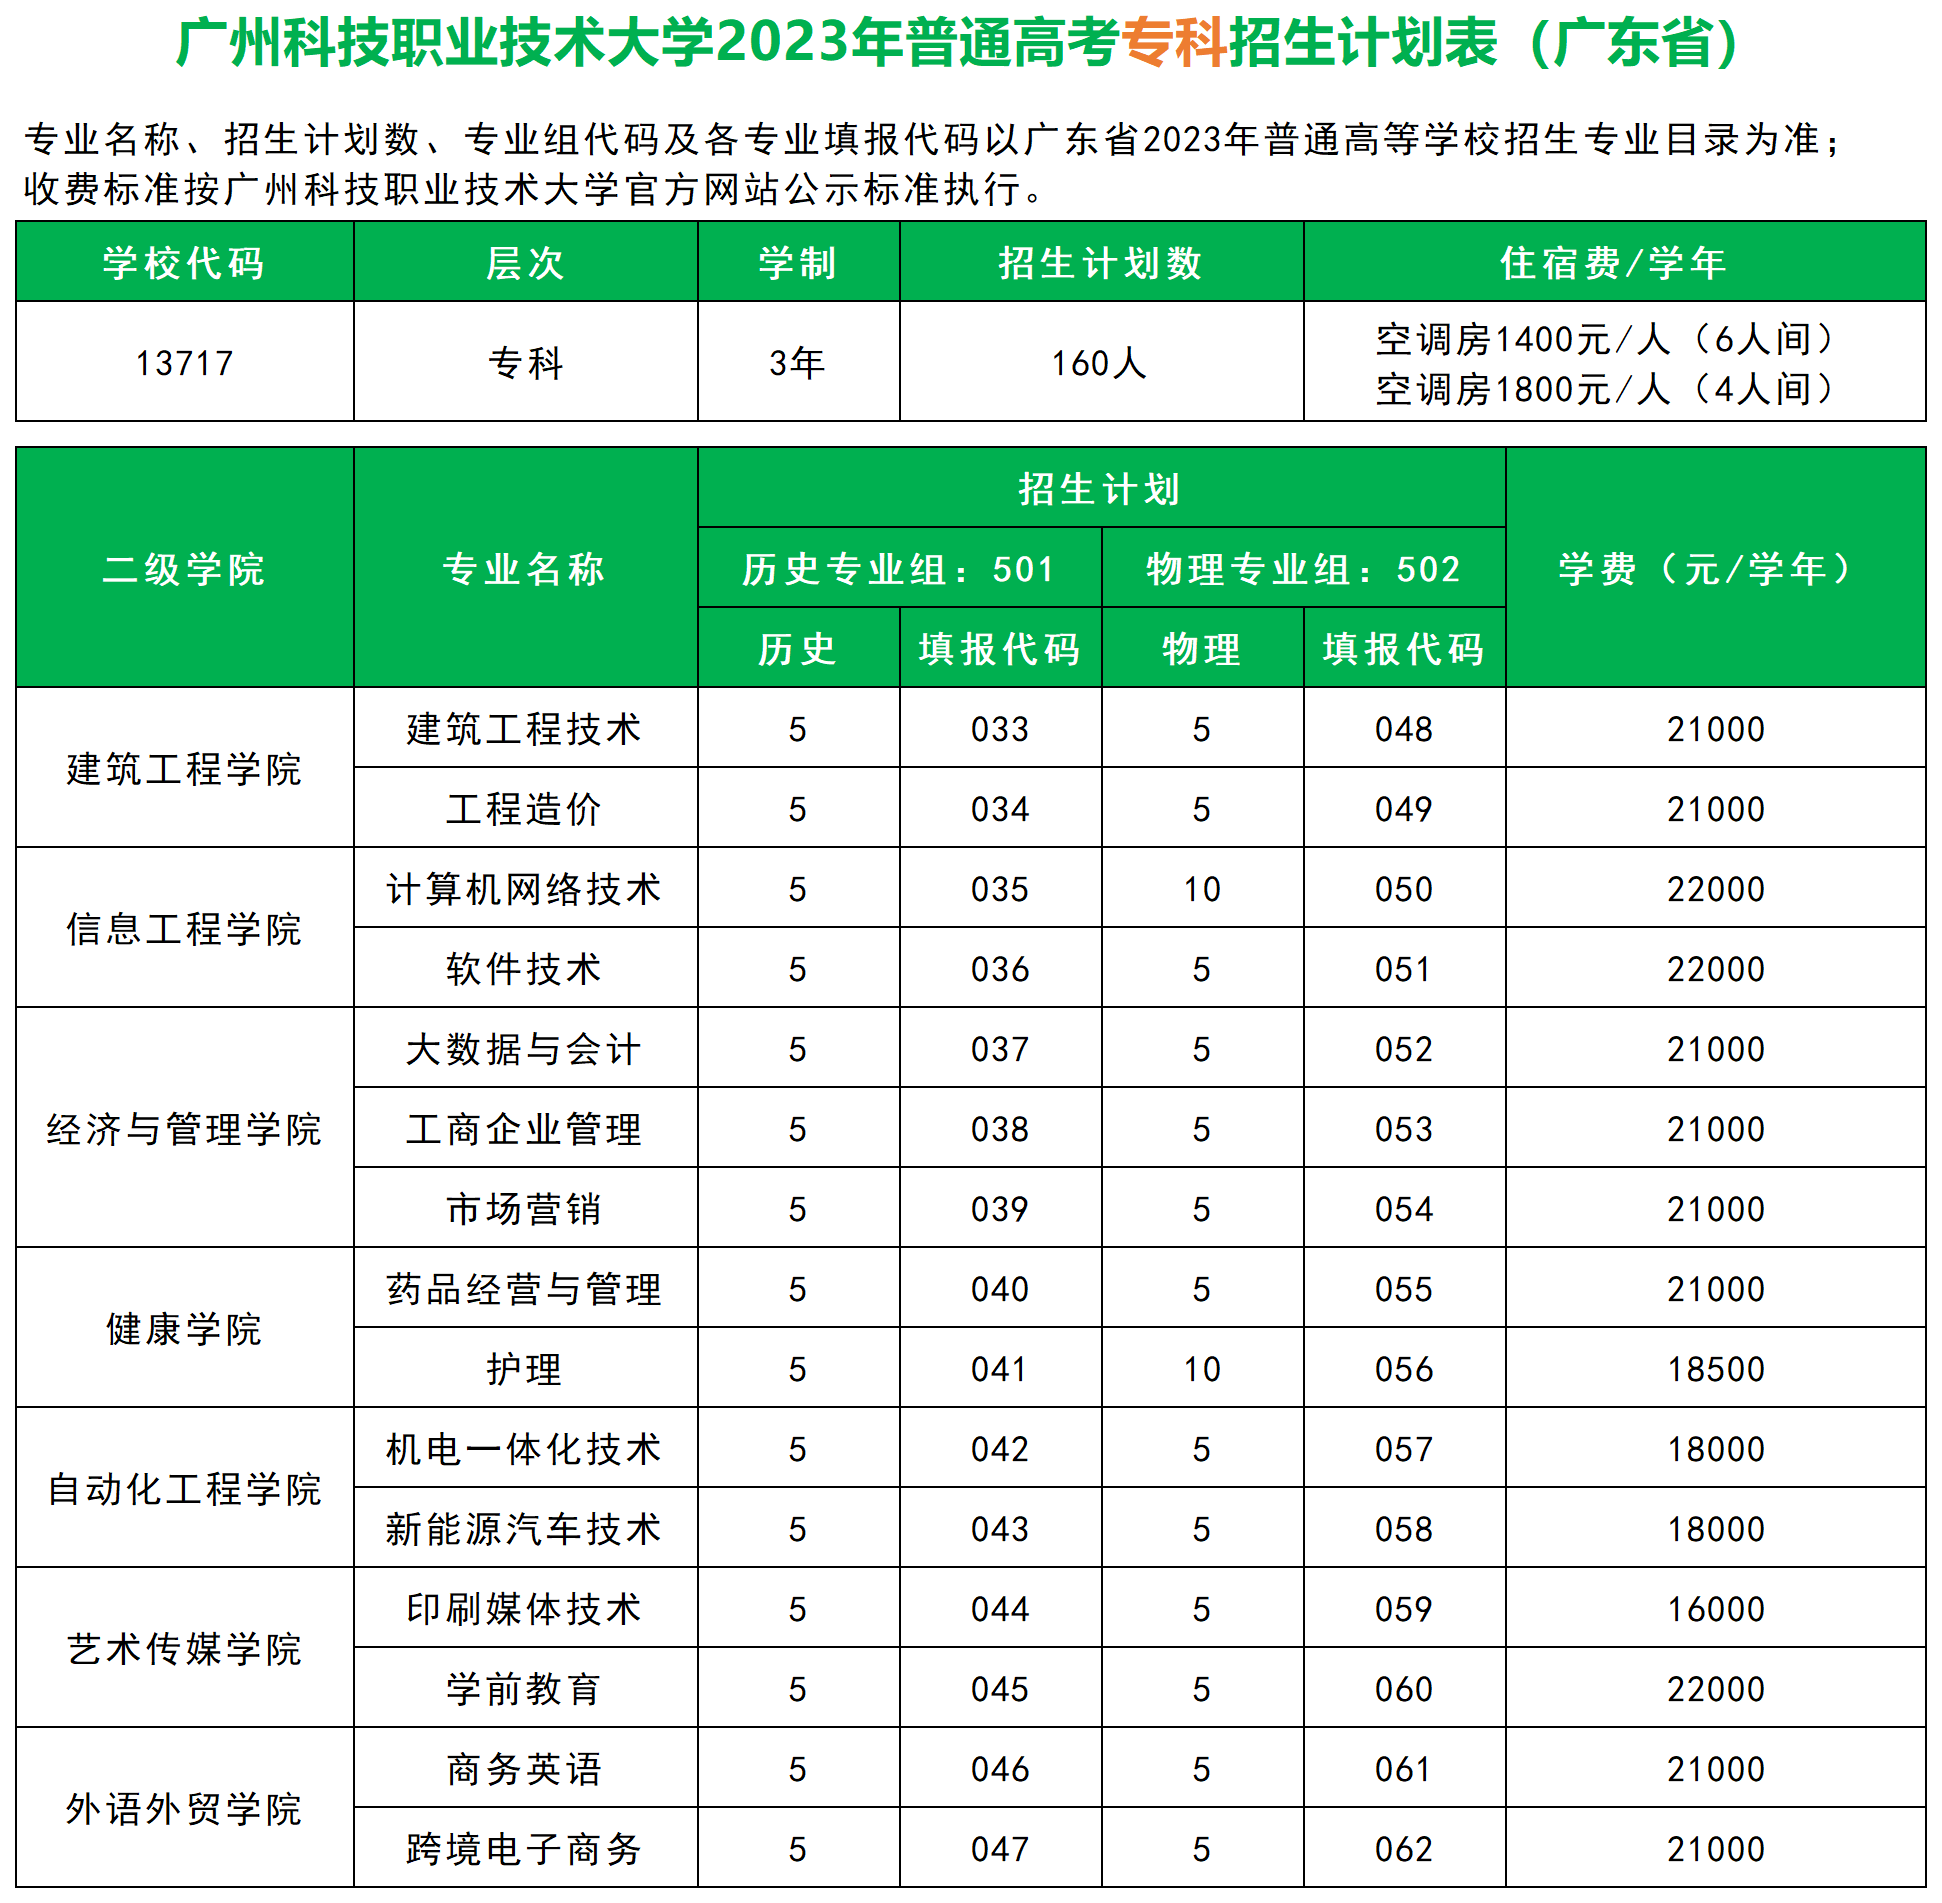 广州科技职业技术大学2023年普通高考专科招生计划表